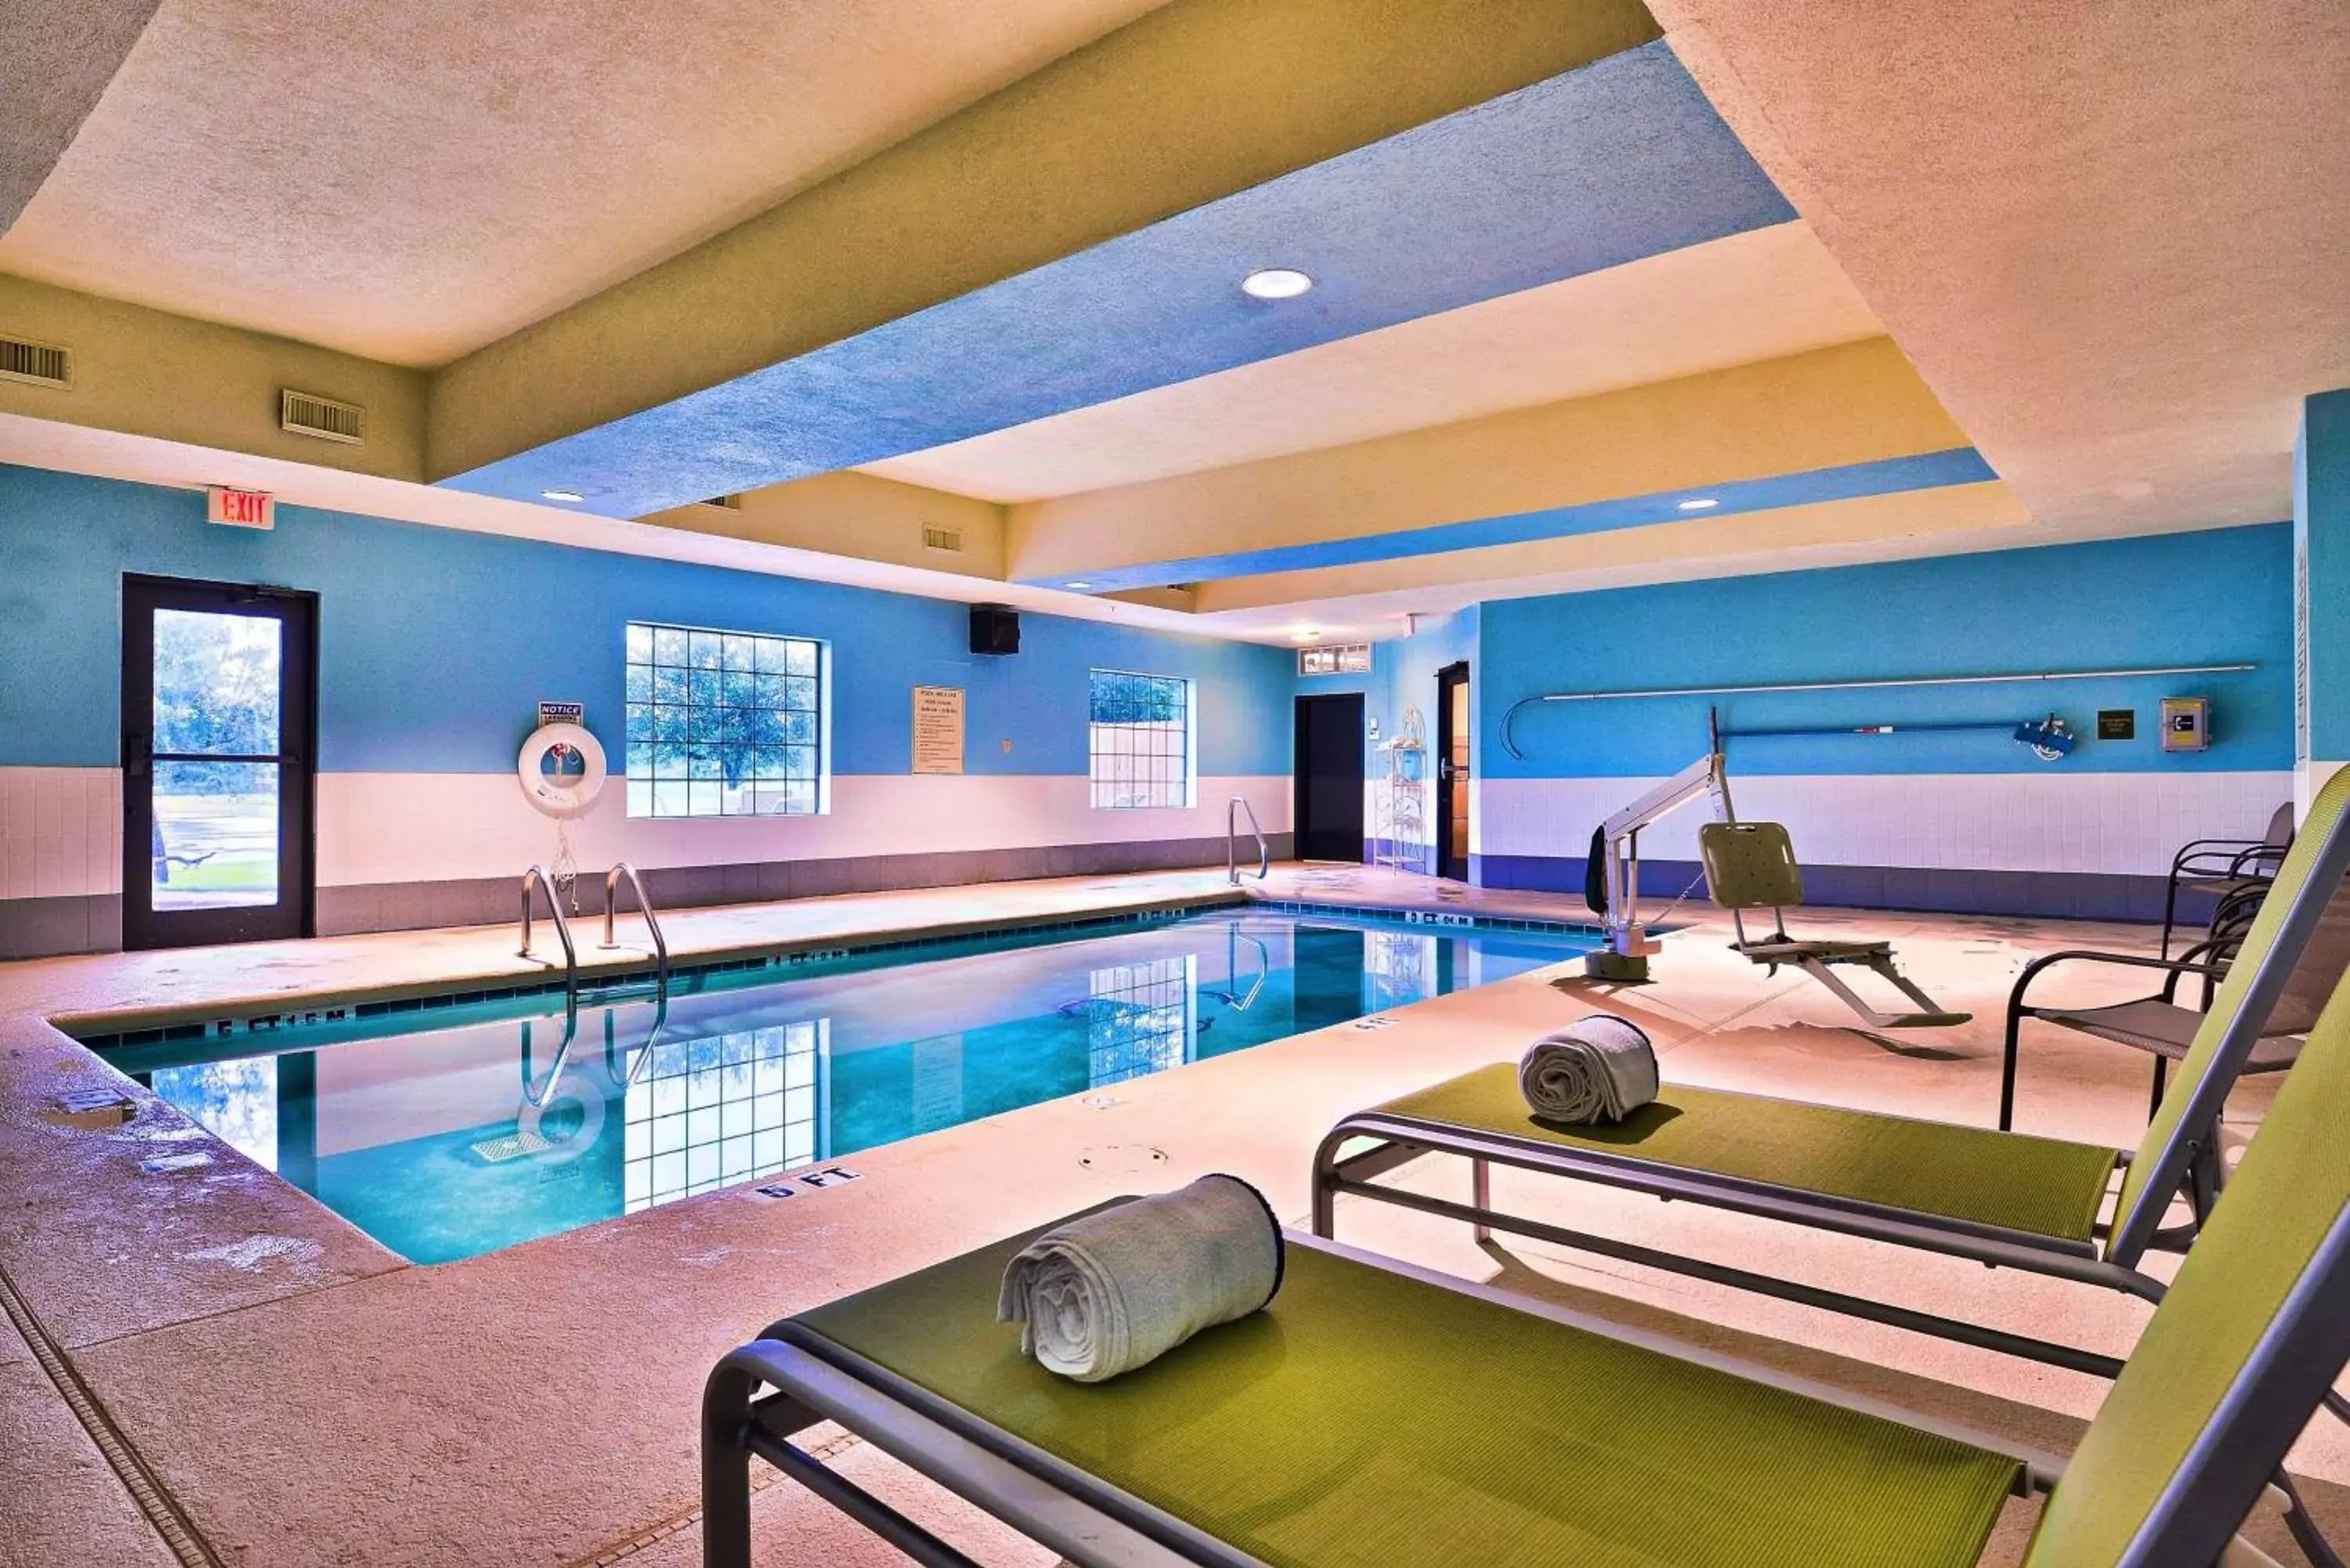 On site, Swimming Pool in Best Western Plus Savannah Airport Inn and Suites